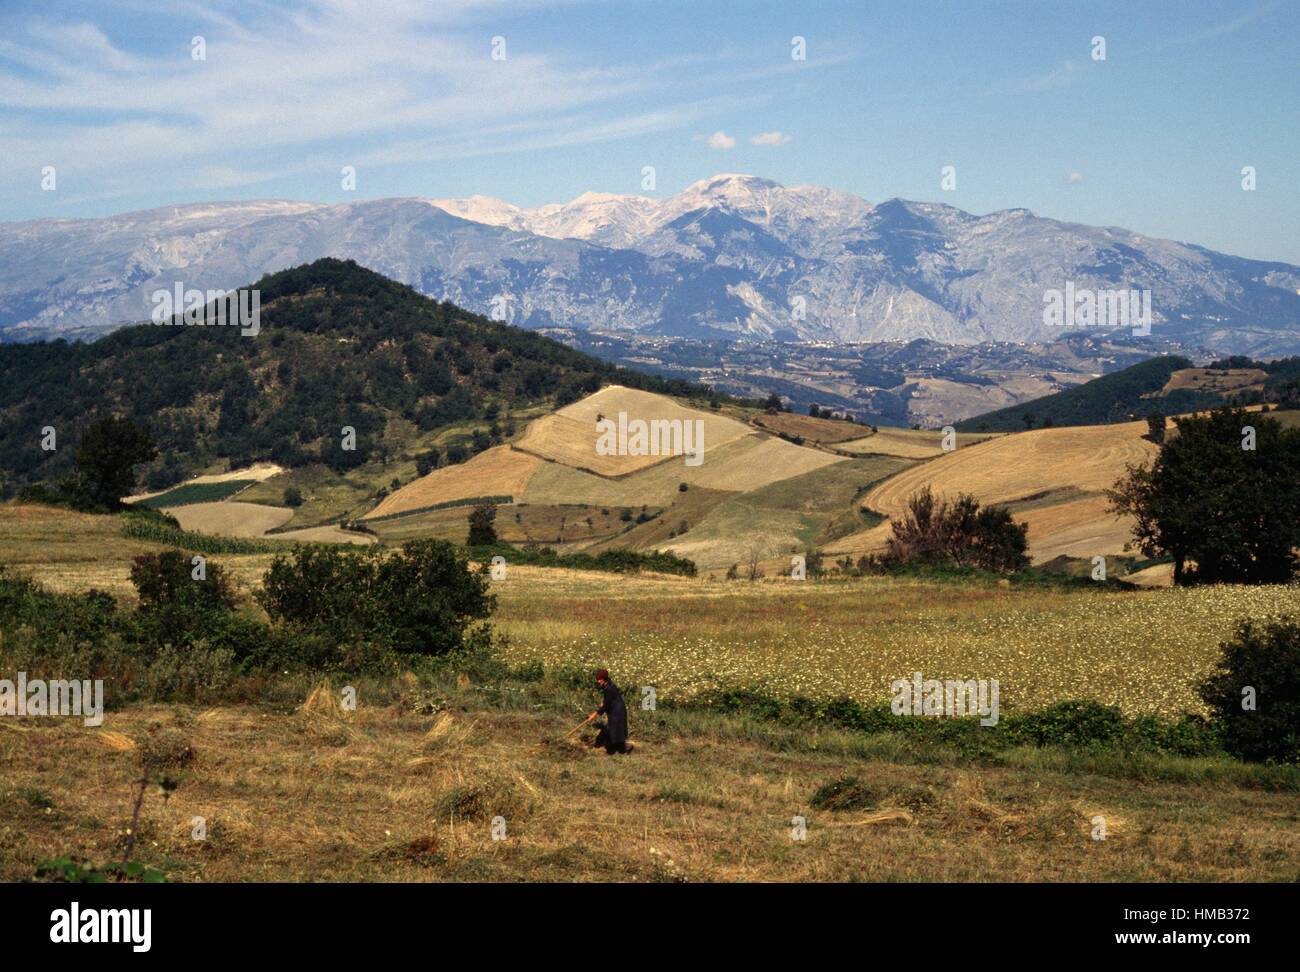 Campi coltivati con il massiccio della Majella in background, Parco Nazionale della Maiella, Maiella, Abruzzo, Italia. Foto Stock